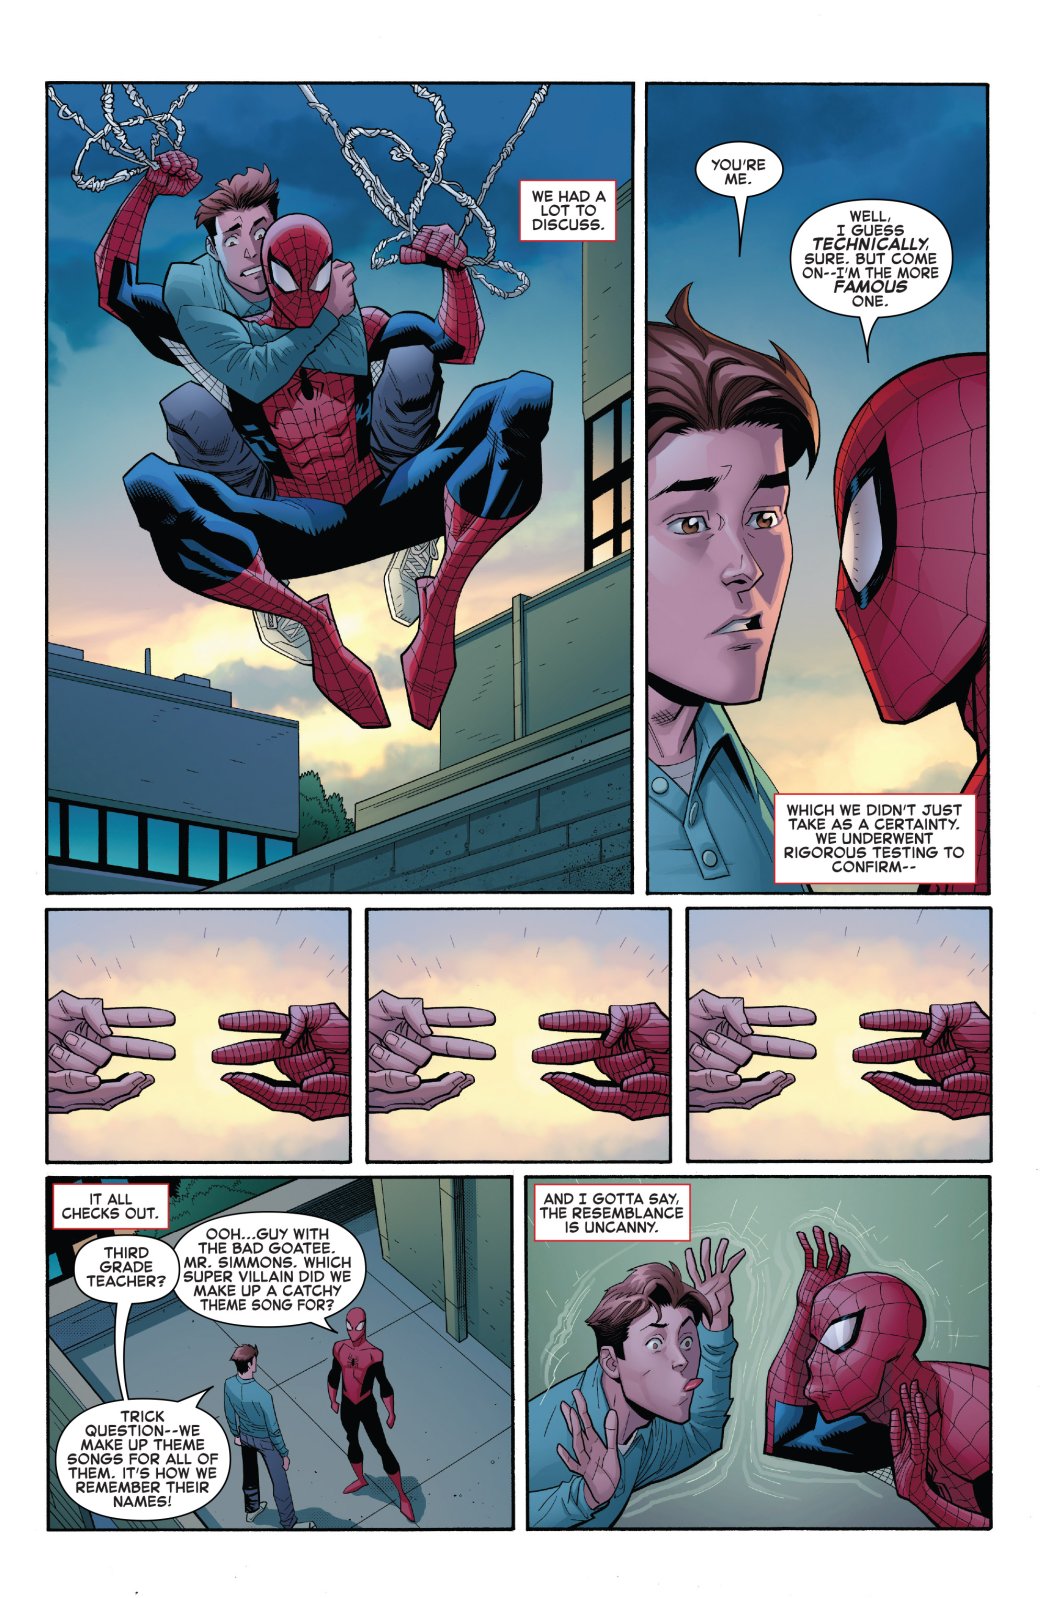 Галерея Человек-паук: Возвращение к основам. Как Marvel спасает супергероя от самой себя - 2 фото